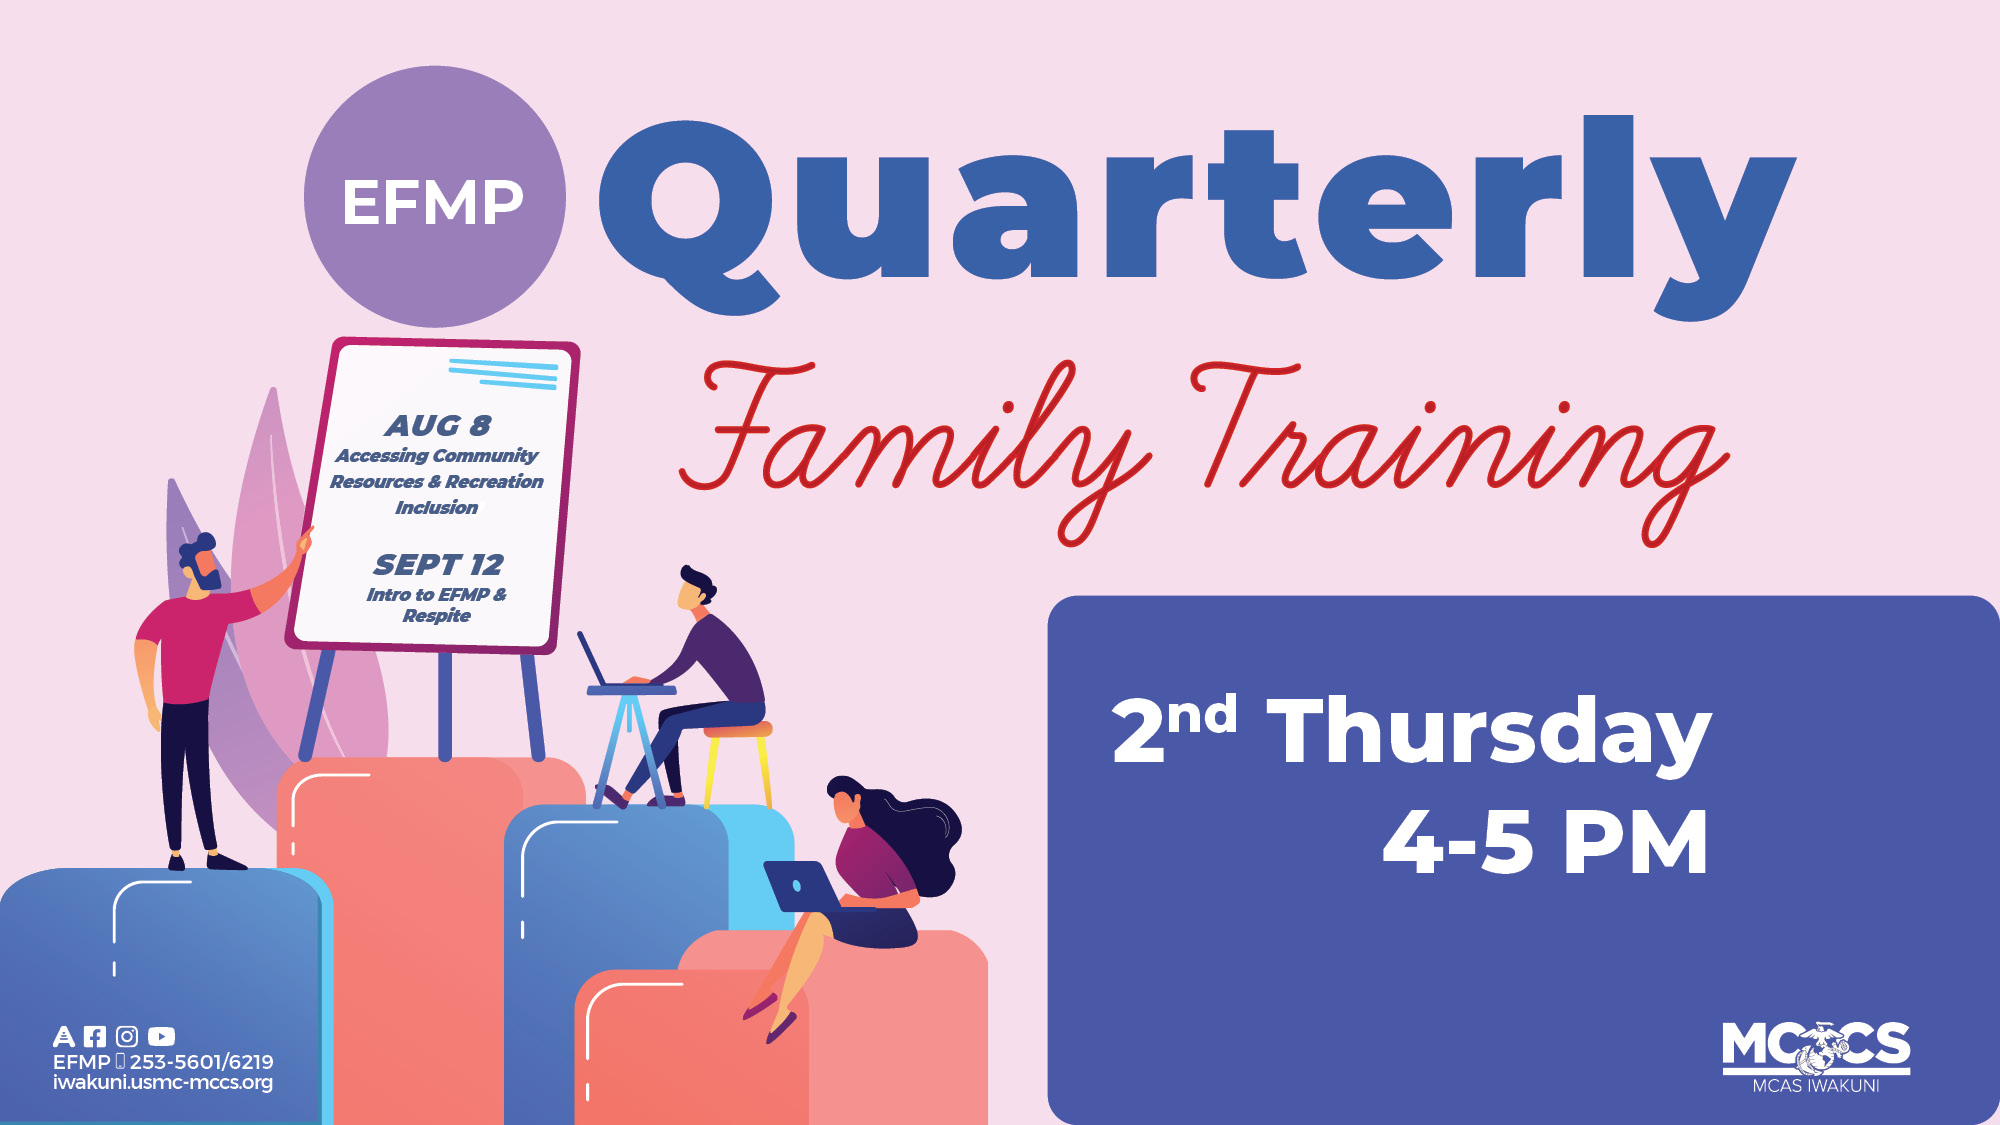 EFMP Quarterly Family Training